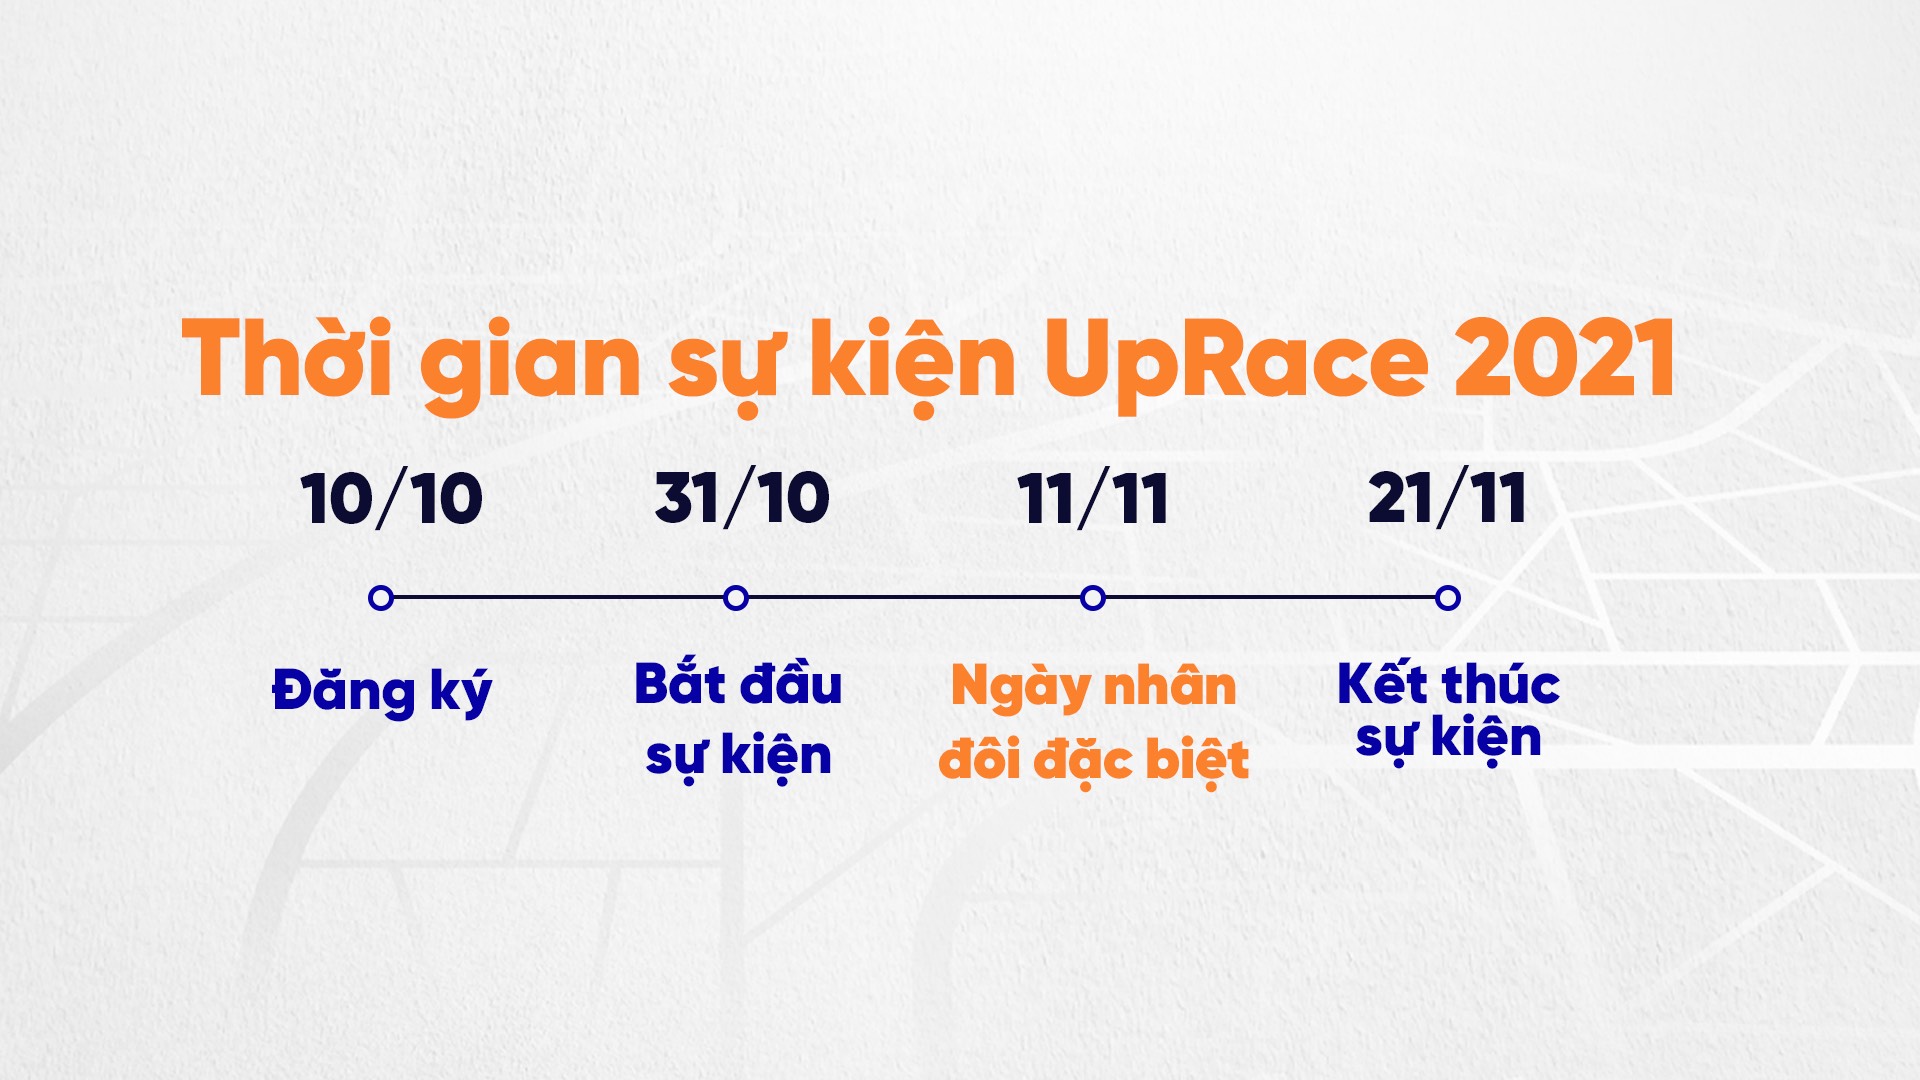 Chi tiết về UpRace 2021 - Giải chạy đặc biệt tại Việt Nam